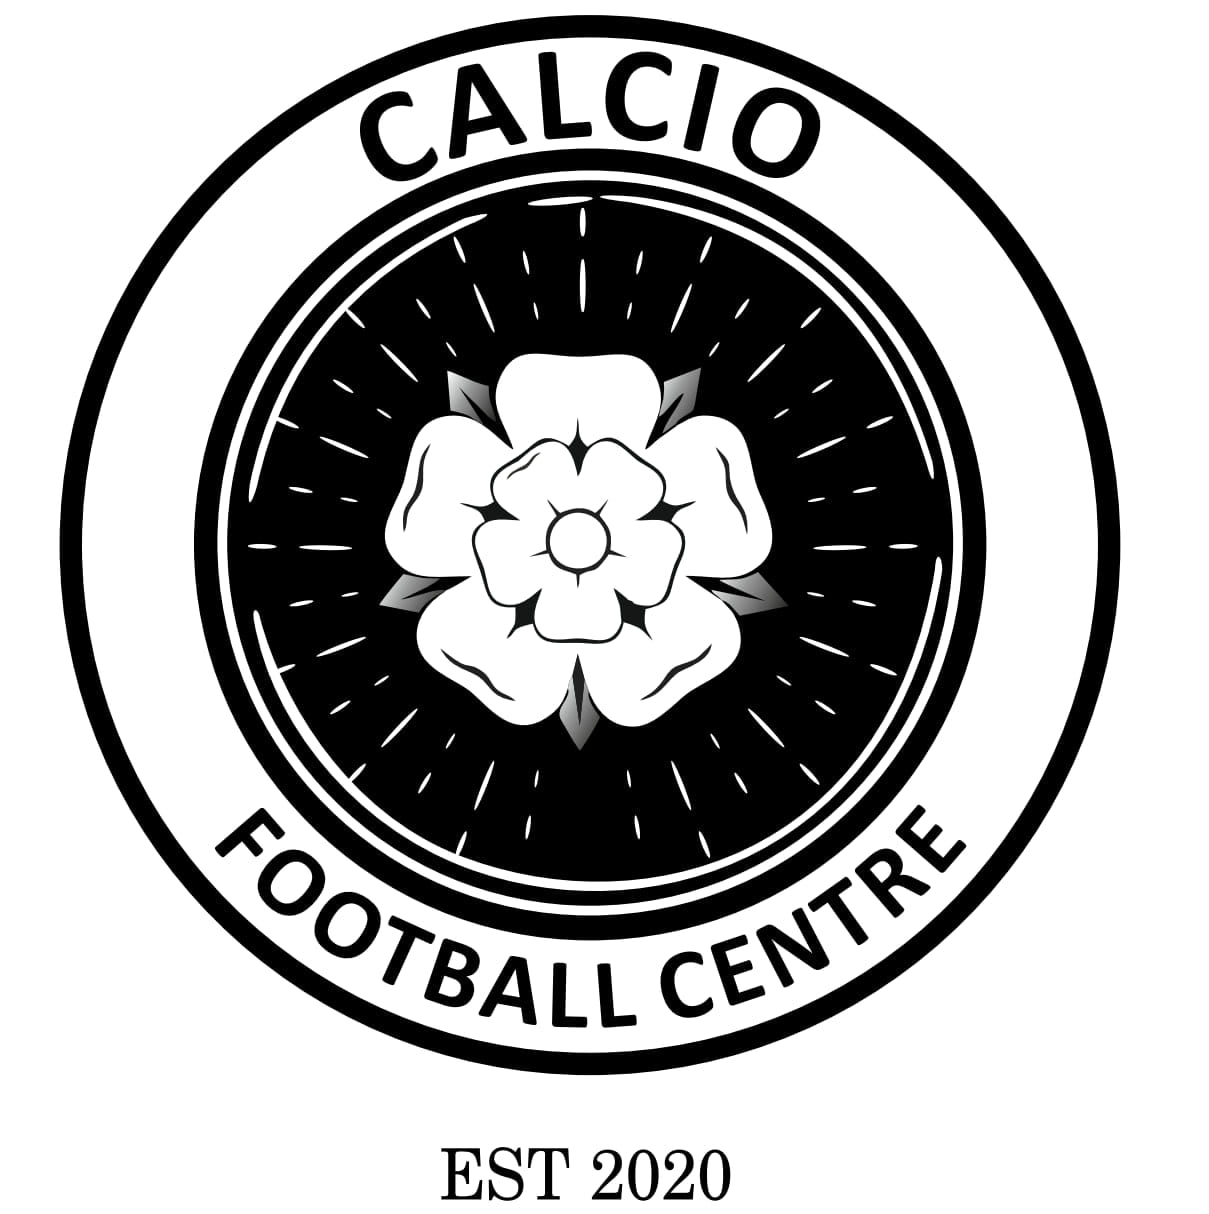 Calcio Football Centre Limited Logo